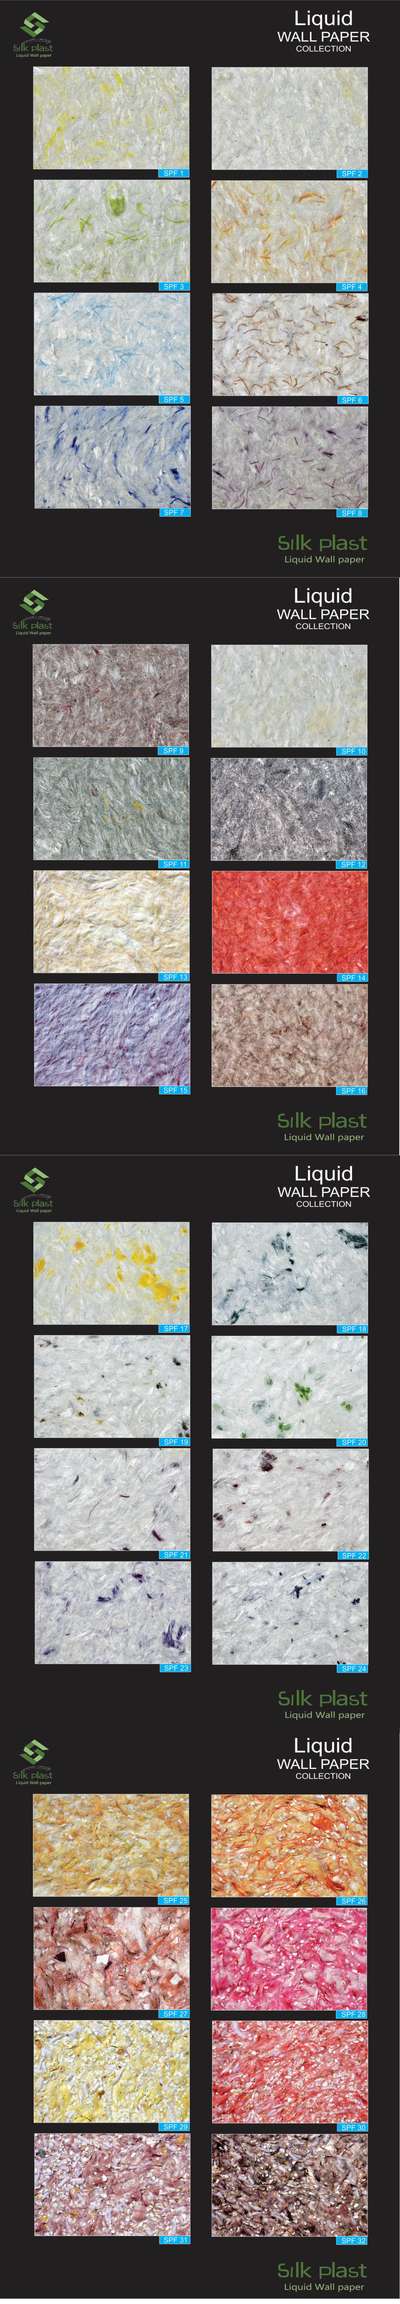 liquid wallpaper
silk plaster